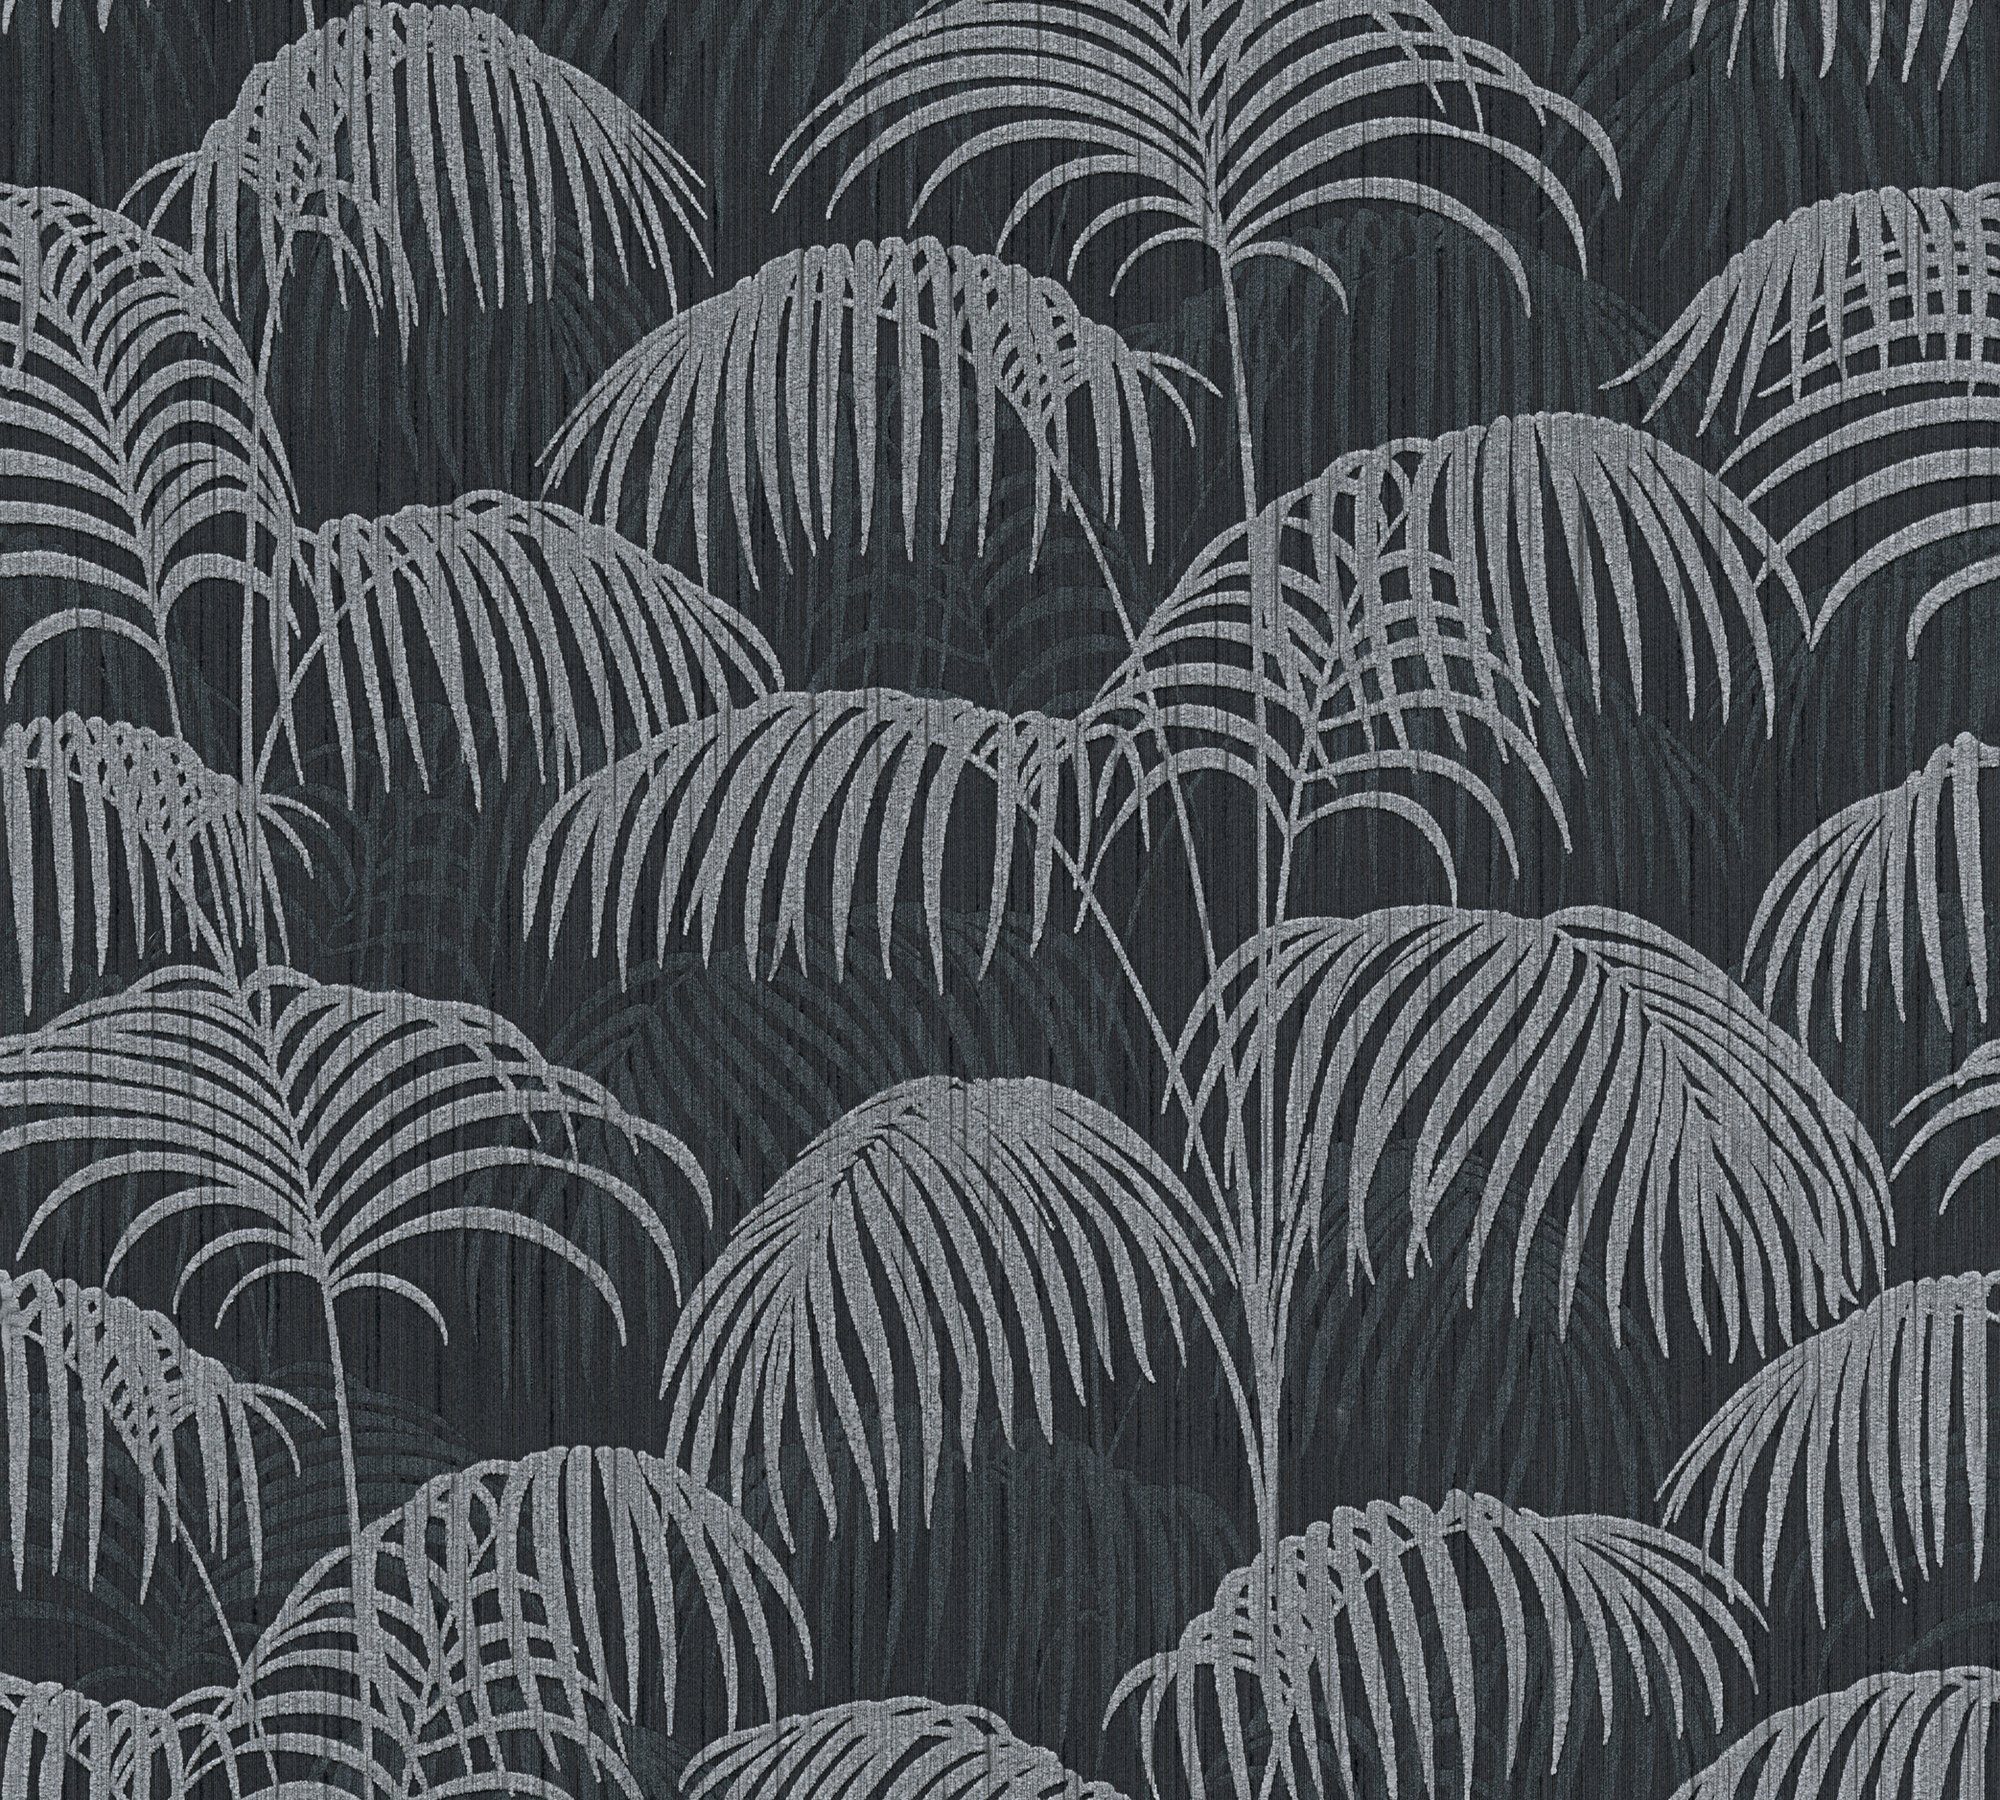 Tessuto, Tapete schwarz/grau Palmen Création Paper floral, Architects Dschungeltapete Textiltapete A.S. botanisch, samtig,